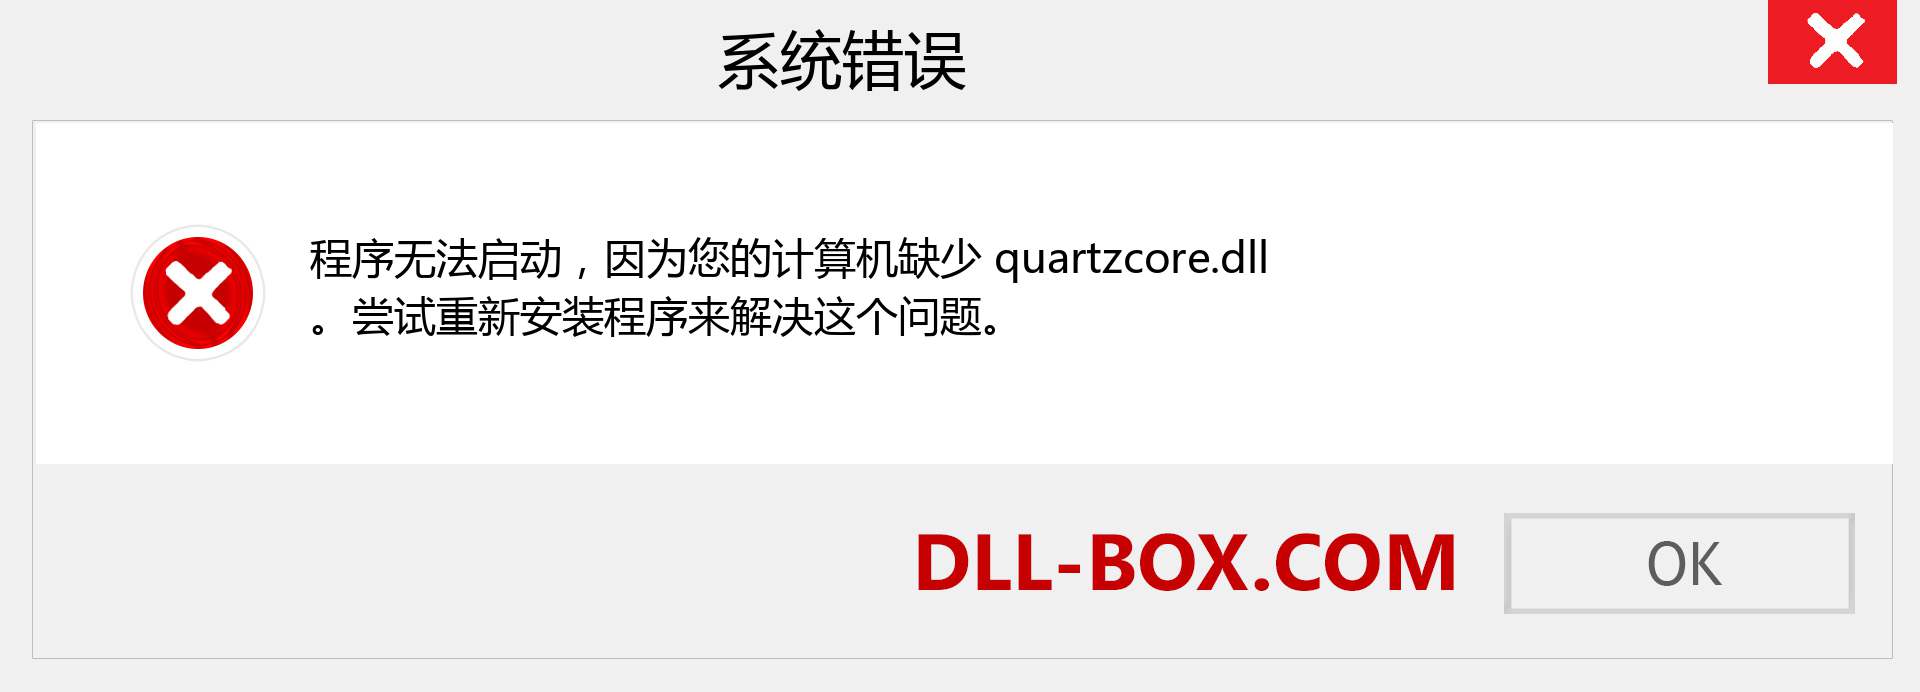 quartzcore.dll 文件丢失？。 适用于 Windows 7、8、10 的下载 - 修复 Windows、照片、图像上的 quartzcore dll 丢失错误